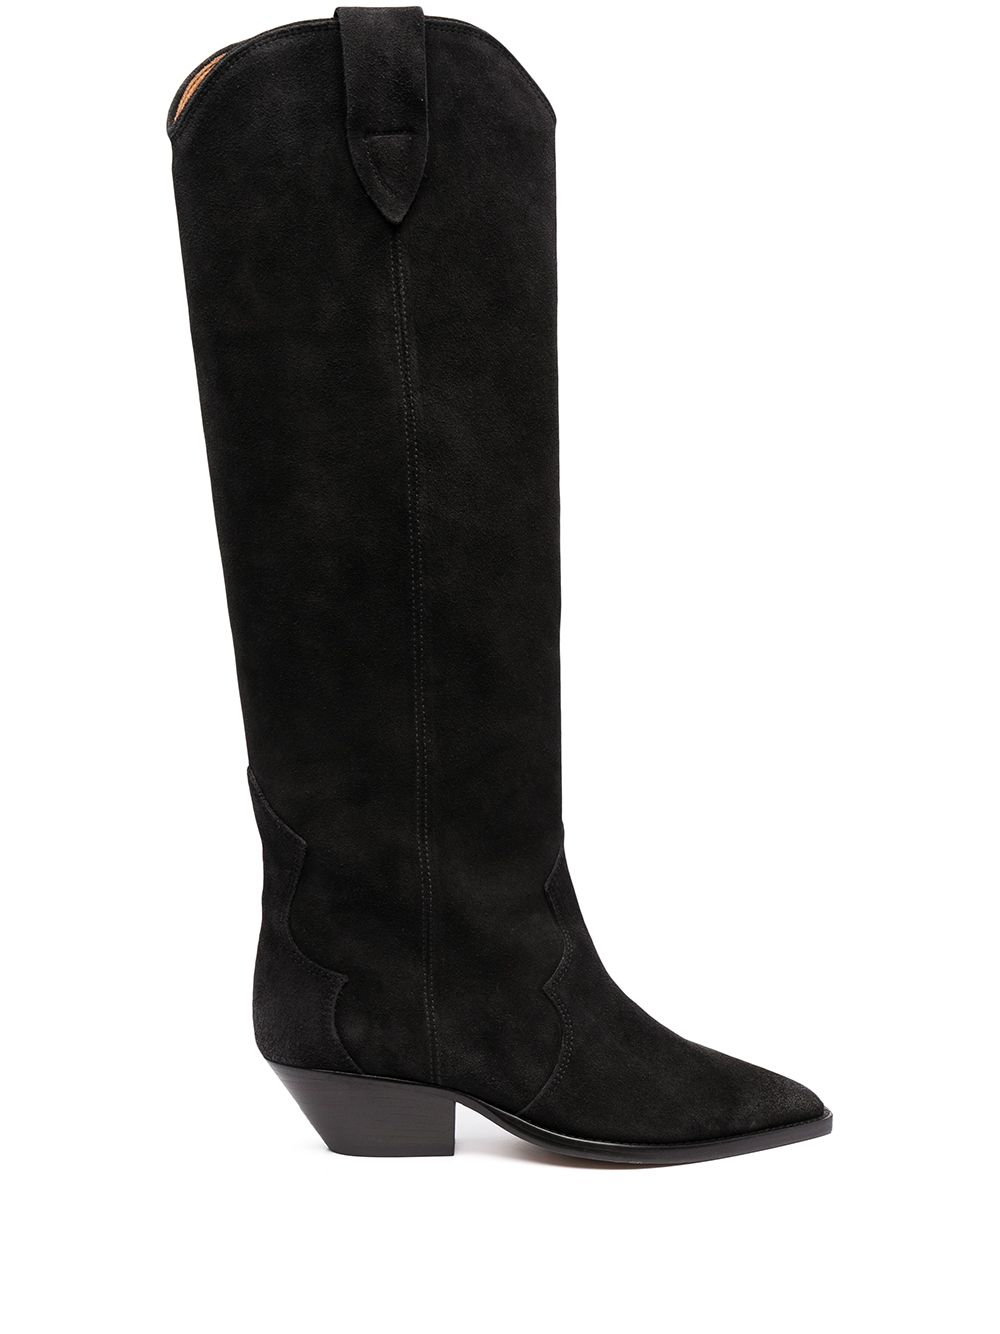 Denvee Leather Boots дамски обувки Isabel Marant 849622694_38